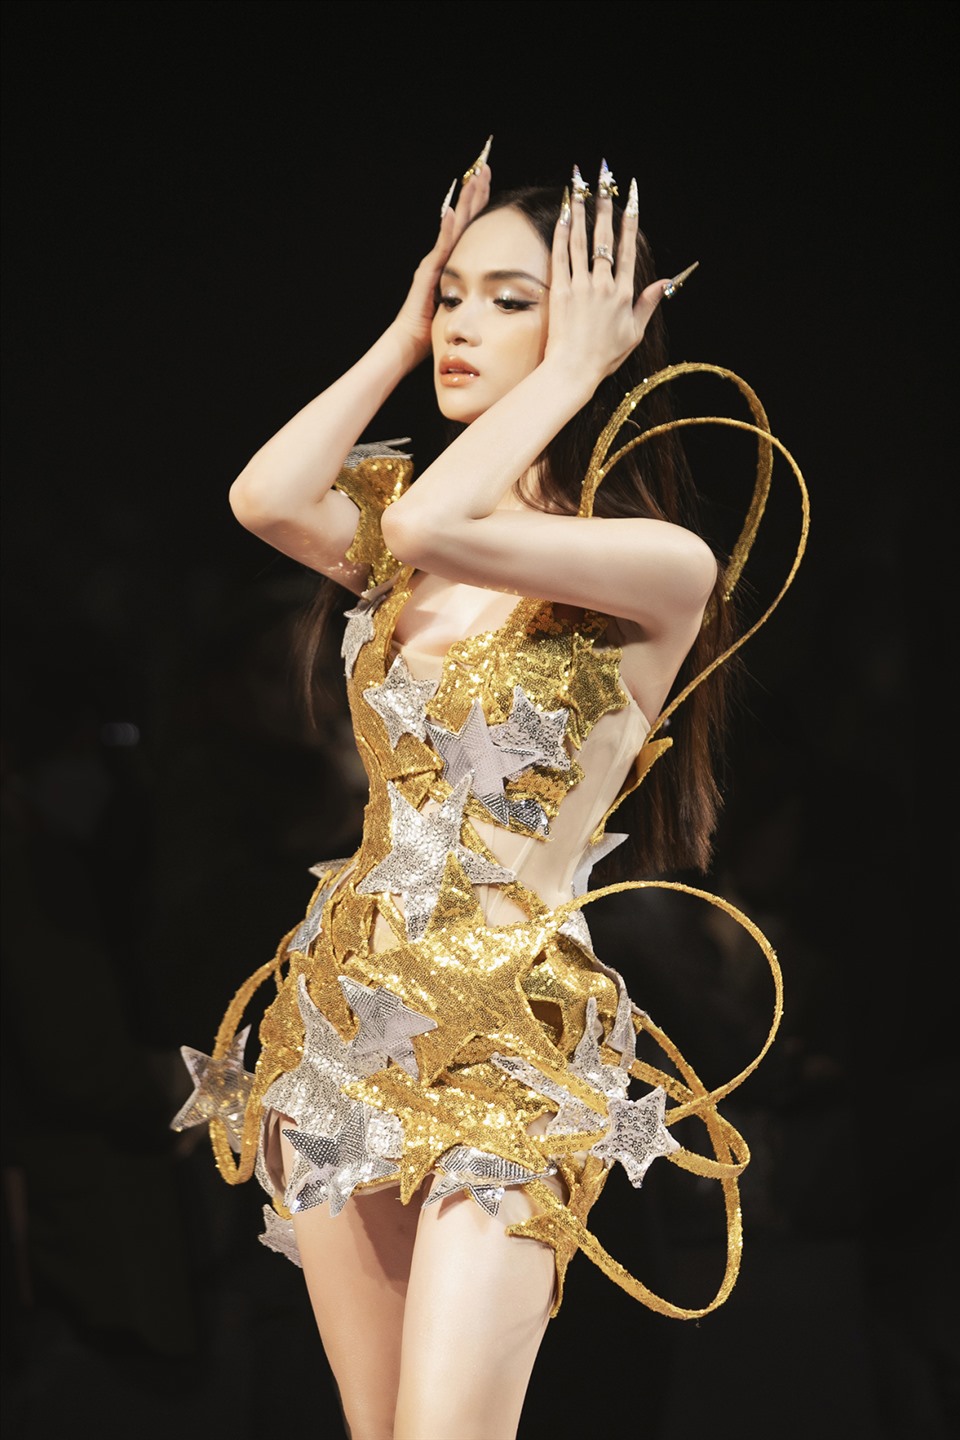 Trong vị trí first face và nắm vai trò khai màn cho sàn catwalk, Hương Giang đã khiến cộng đồng mạng không khỏi trầm trồ khi khoác trên mình trang phục ánh vàng lấp lánh cùng với những hoạ tiết ánh sao rực rỡ cực bắt mắt.